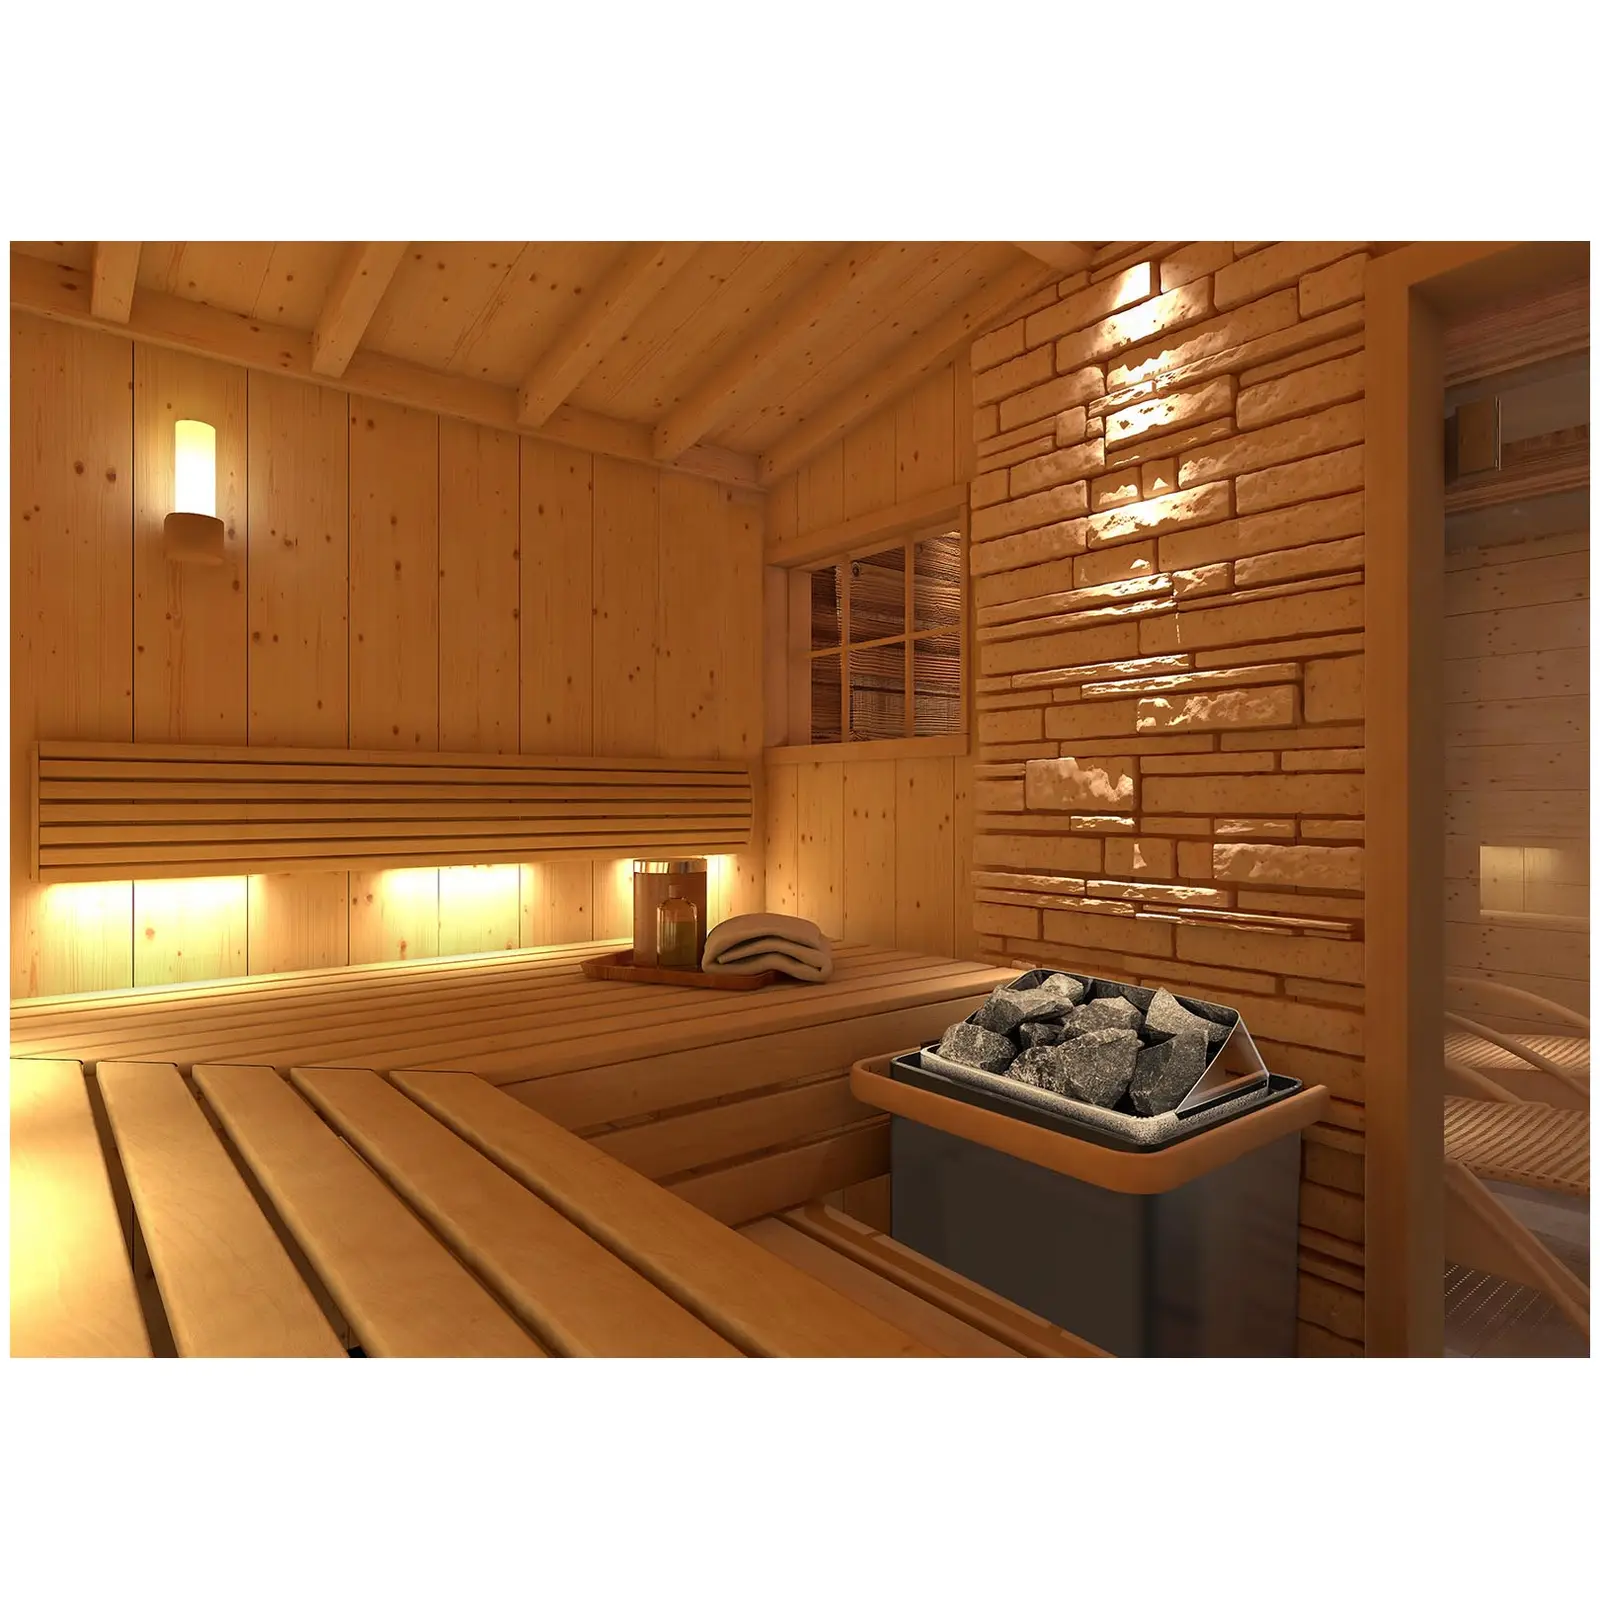 Zestaw Piec do sauny - elektryczny - 6 kW + Panel sterujący do sauny - 400 V 3 N - zabezpieczenie TCO